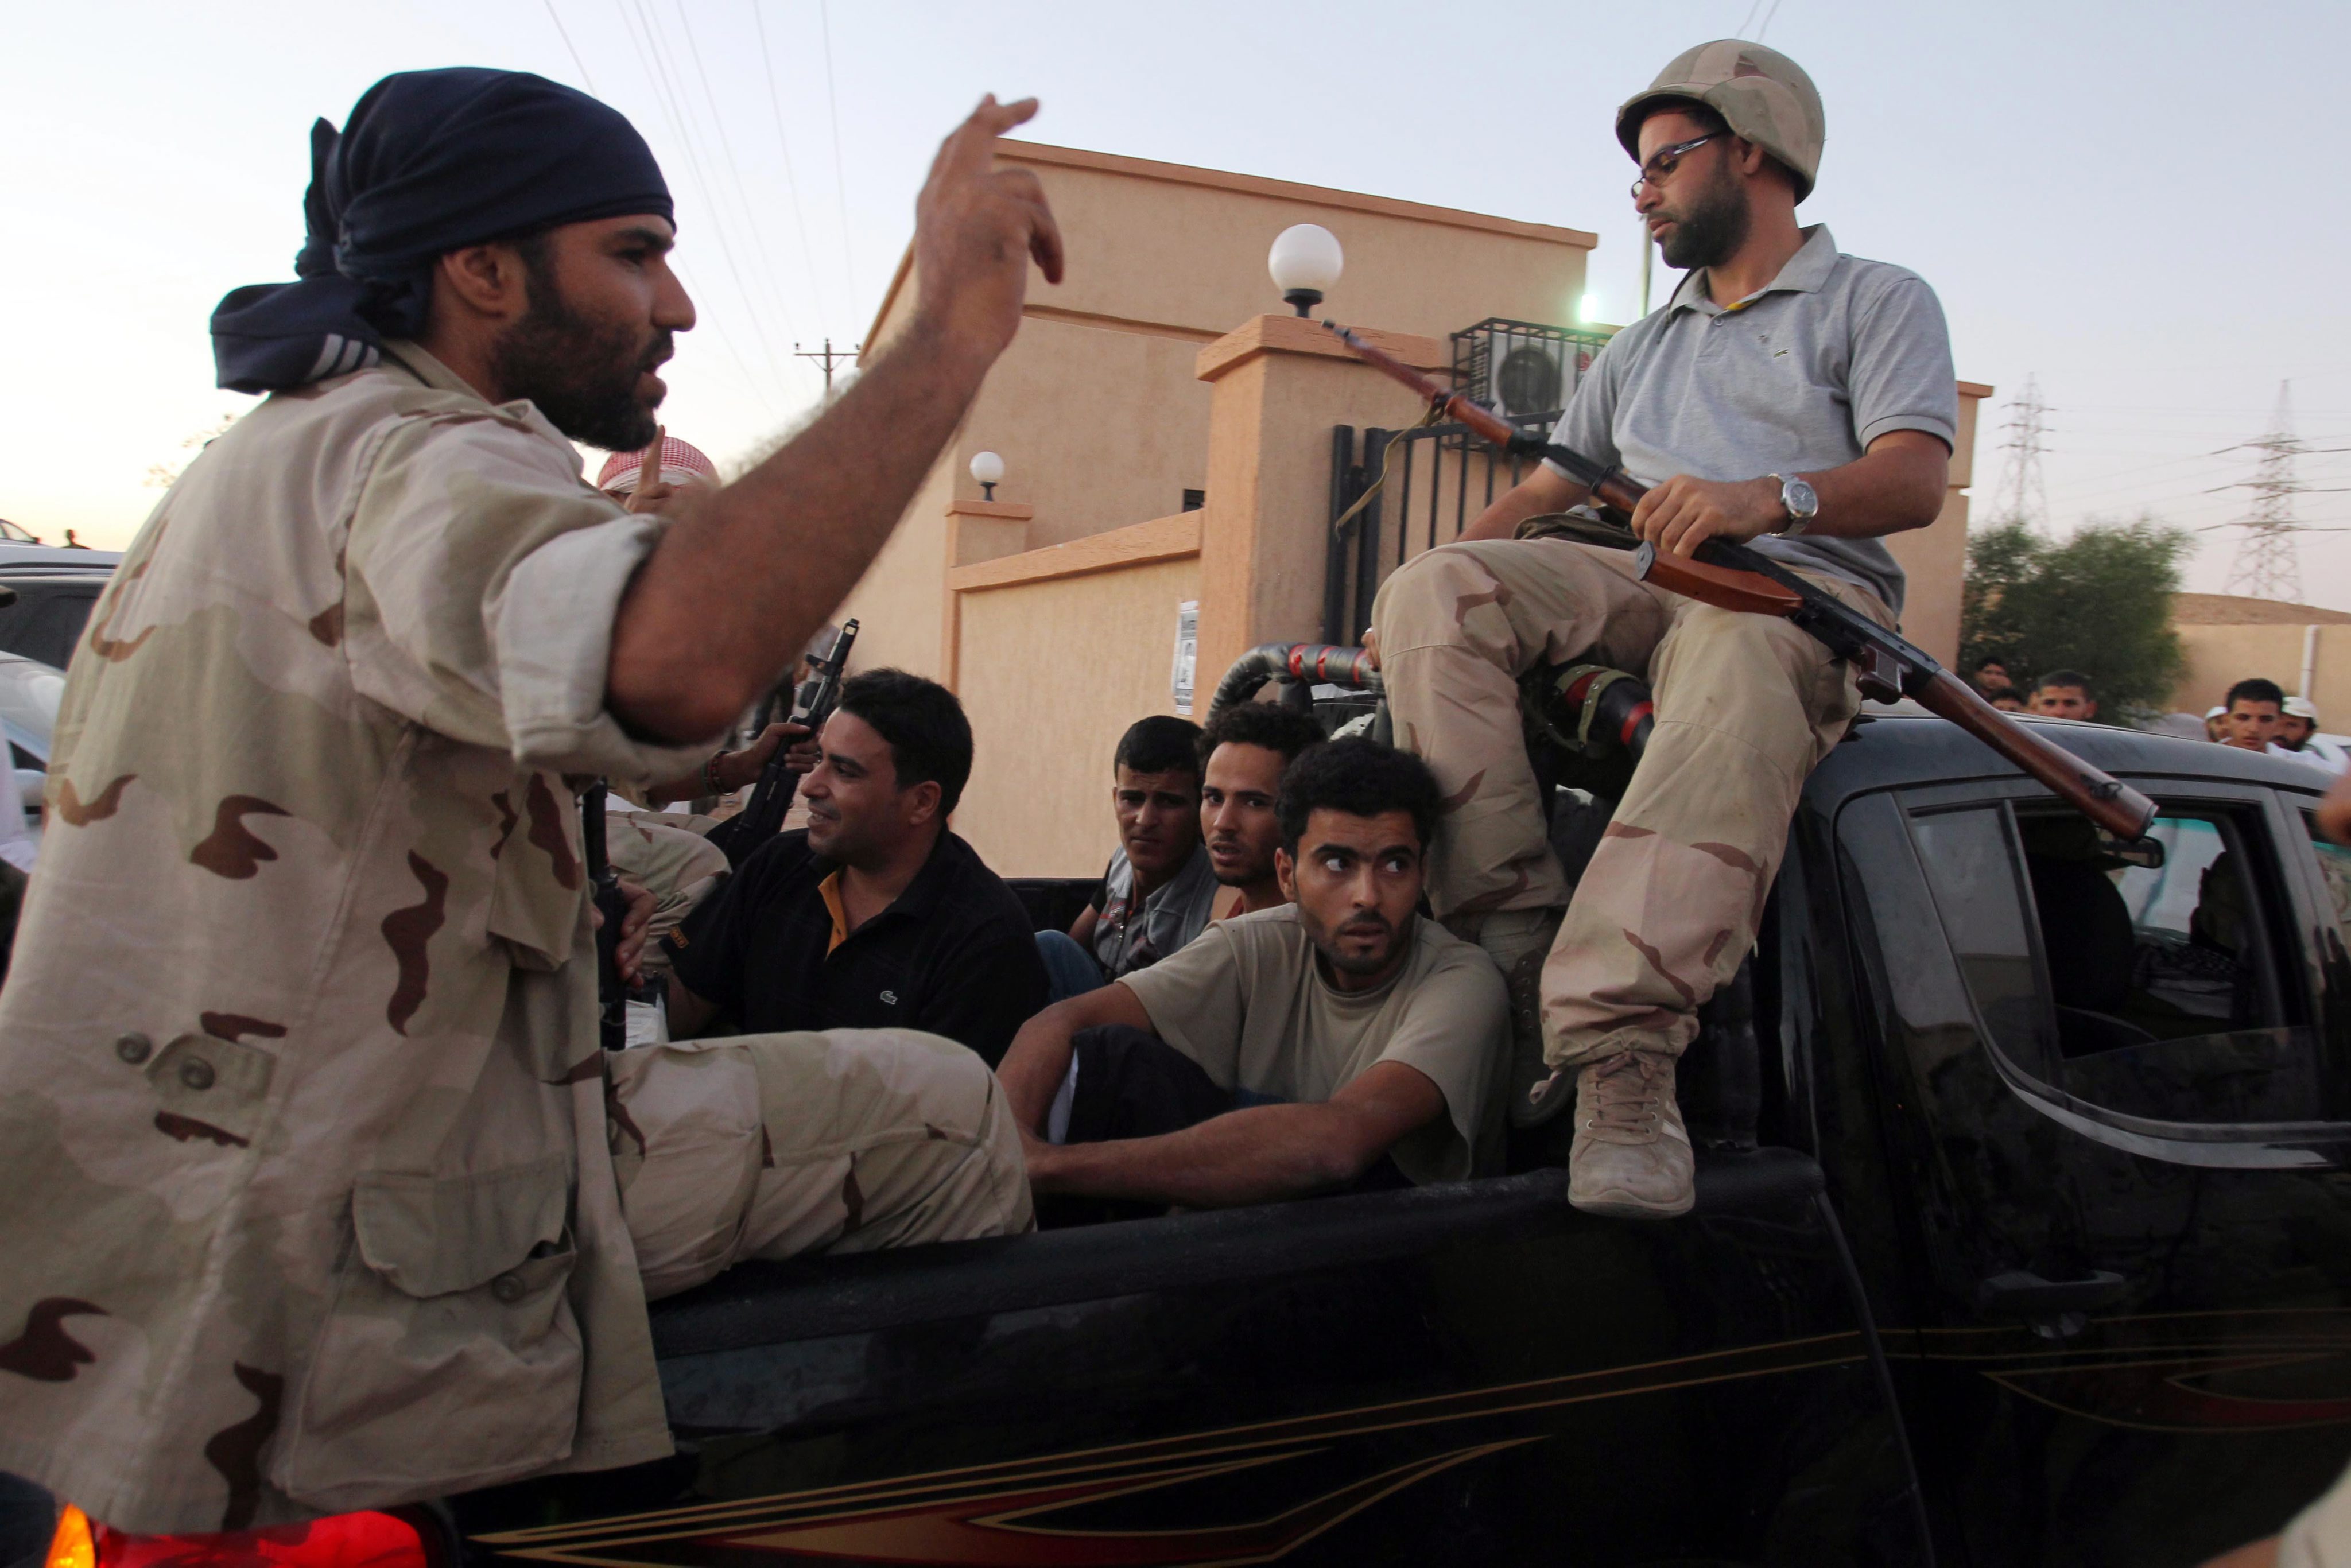 Λιβύη: Ισχυρή αντίσταση συναντούν οι αντικαθεστωτικοί στην Μπάνι Ουαλίντ